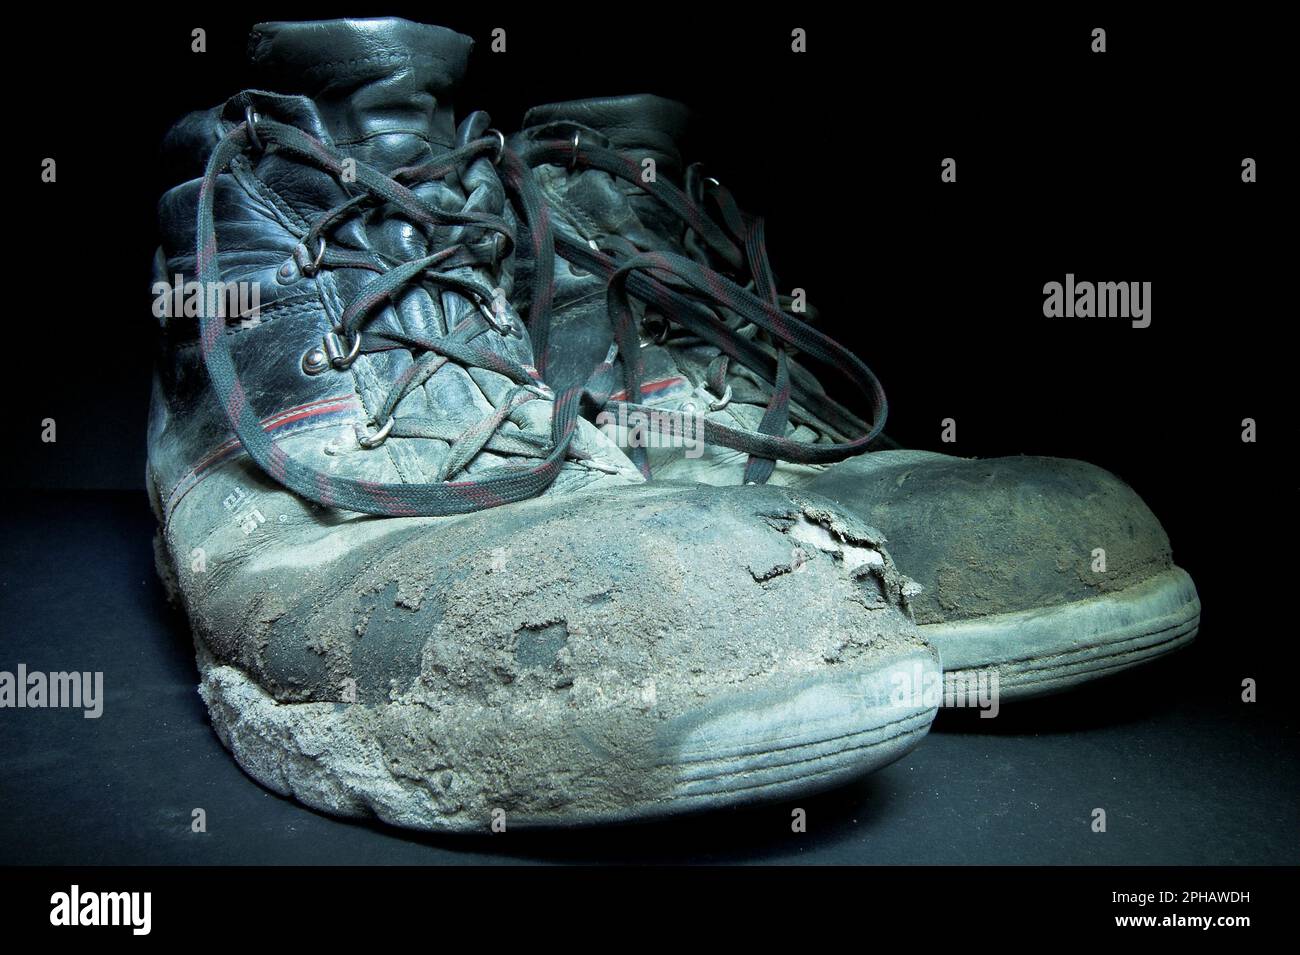 Alte Arbeitschuhe, anciennes chaussures de travail Banque D'Images